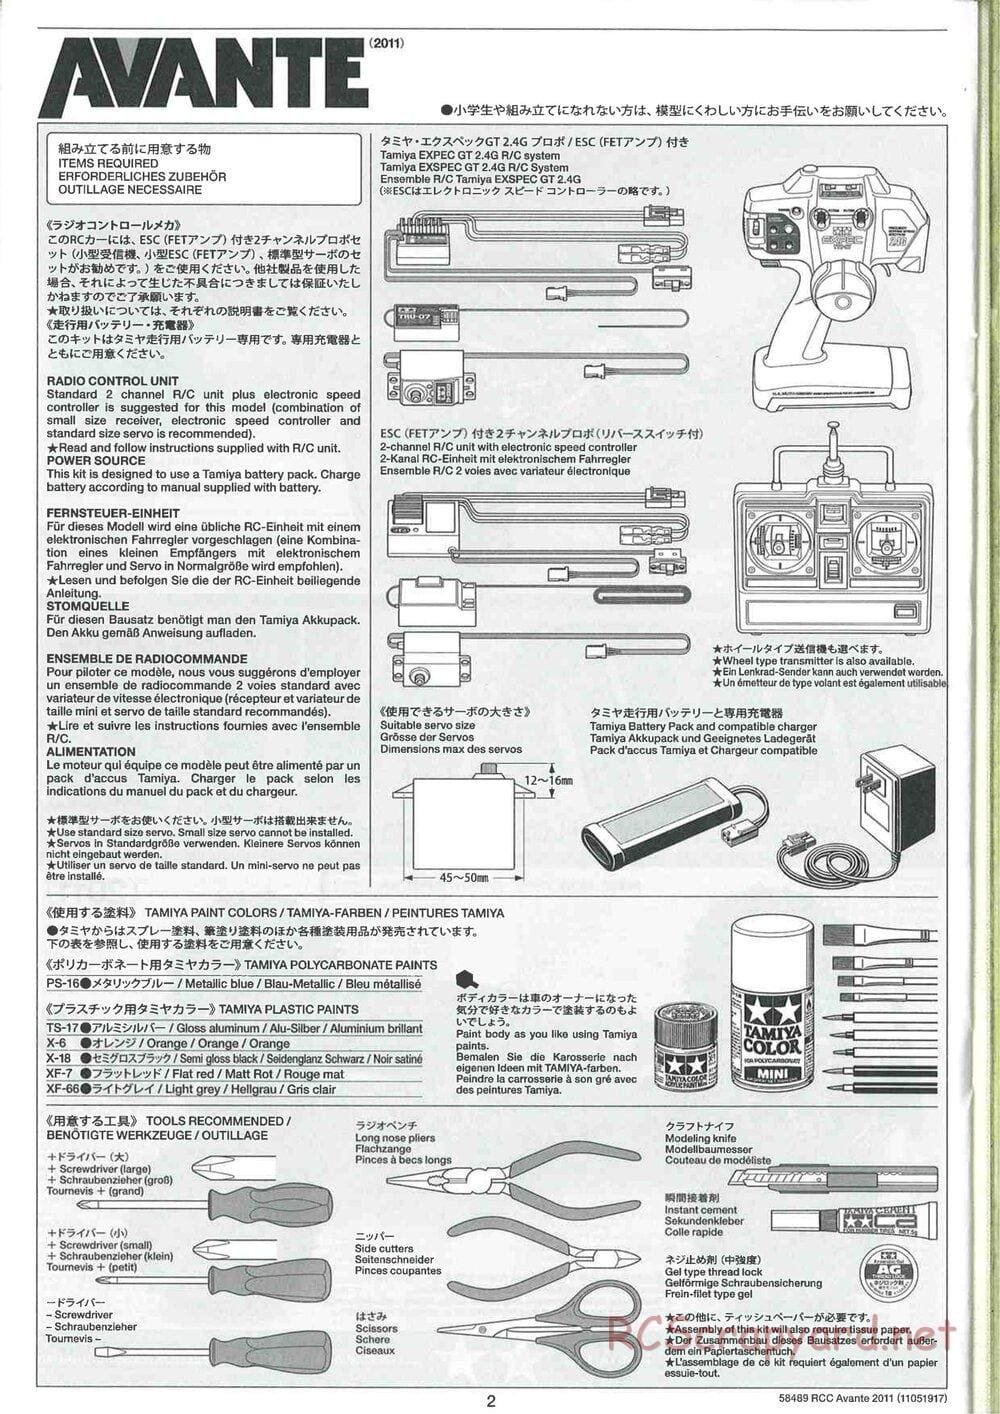 Tamiya - Avante 2011 - AV Chassis - Manual - Page 2